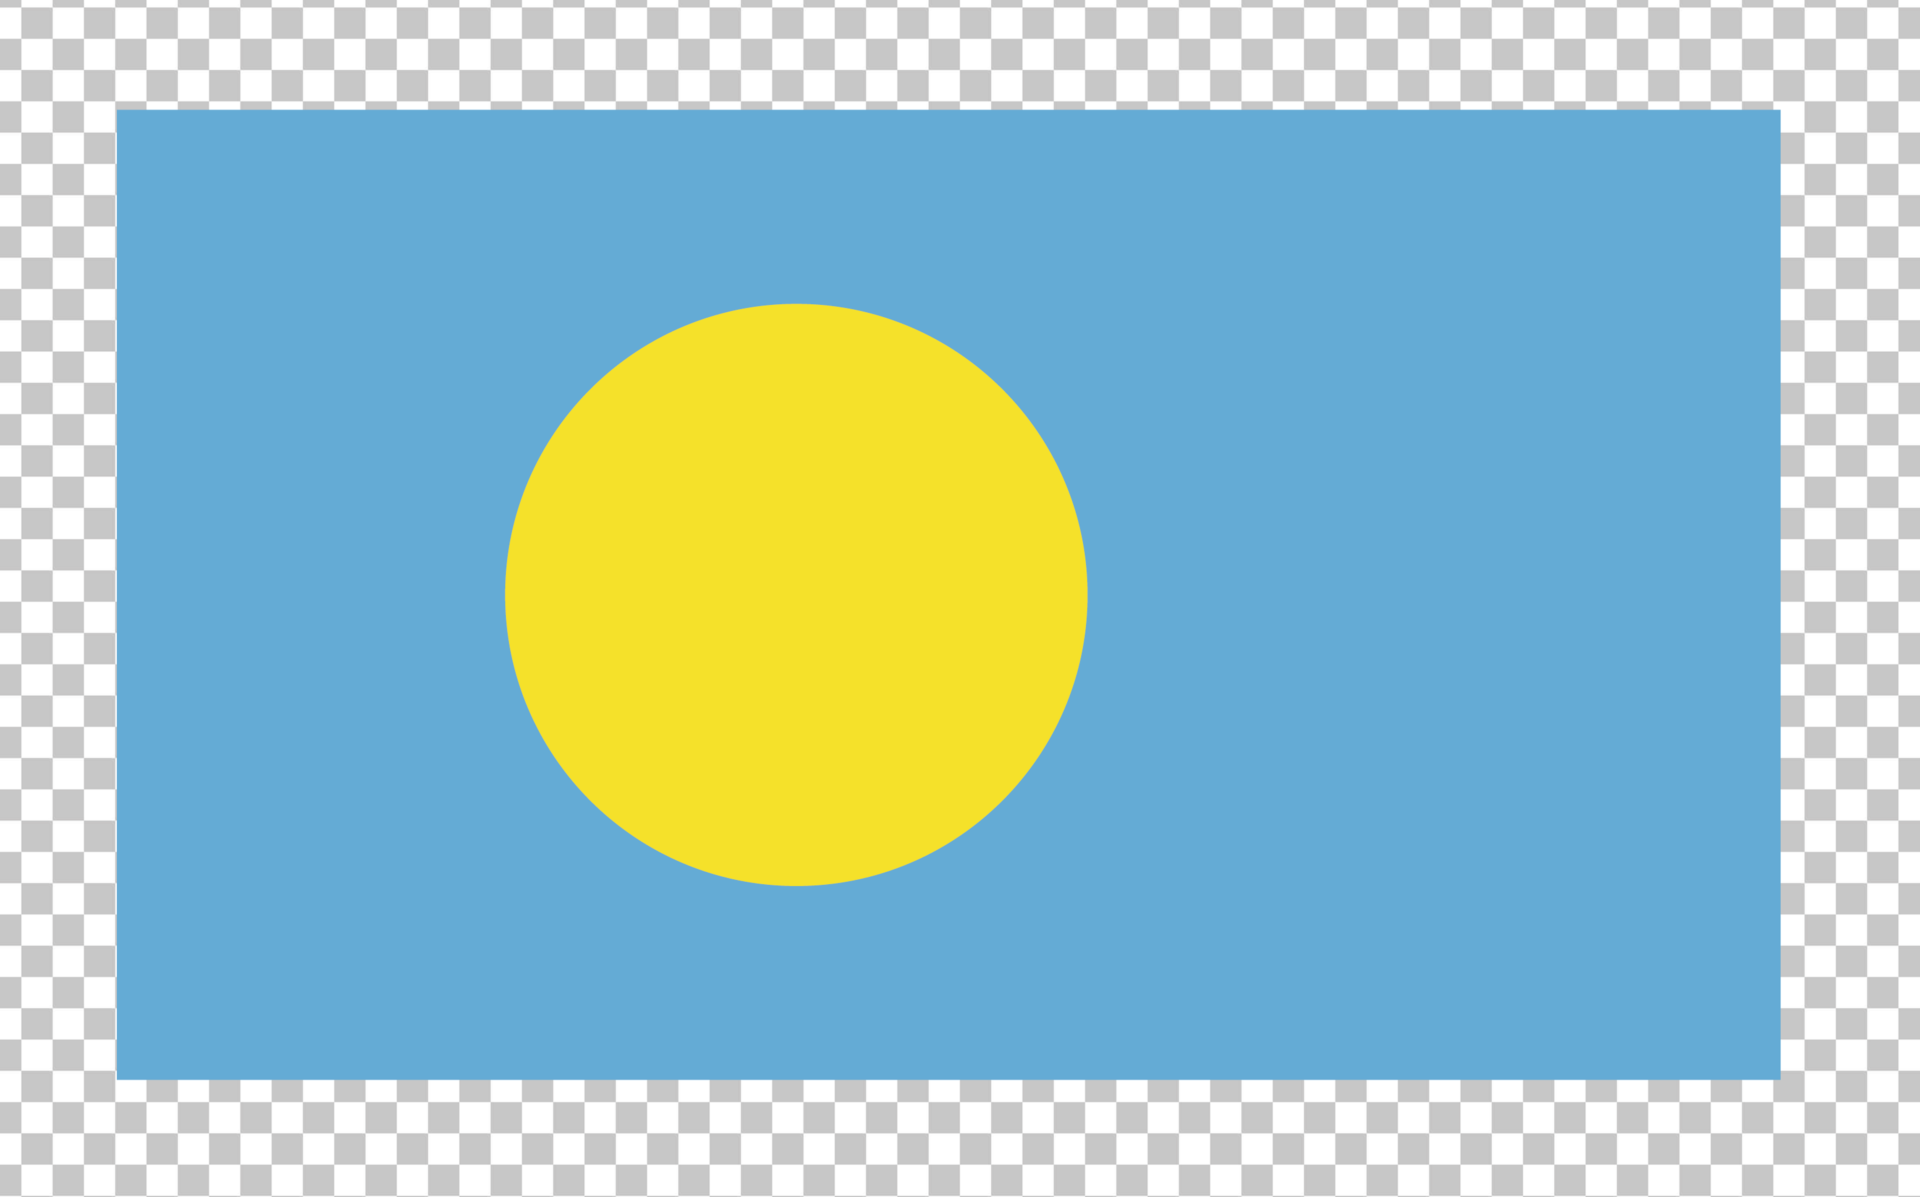 Palau flag PNG Image